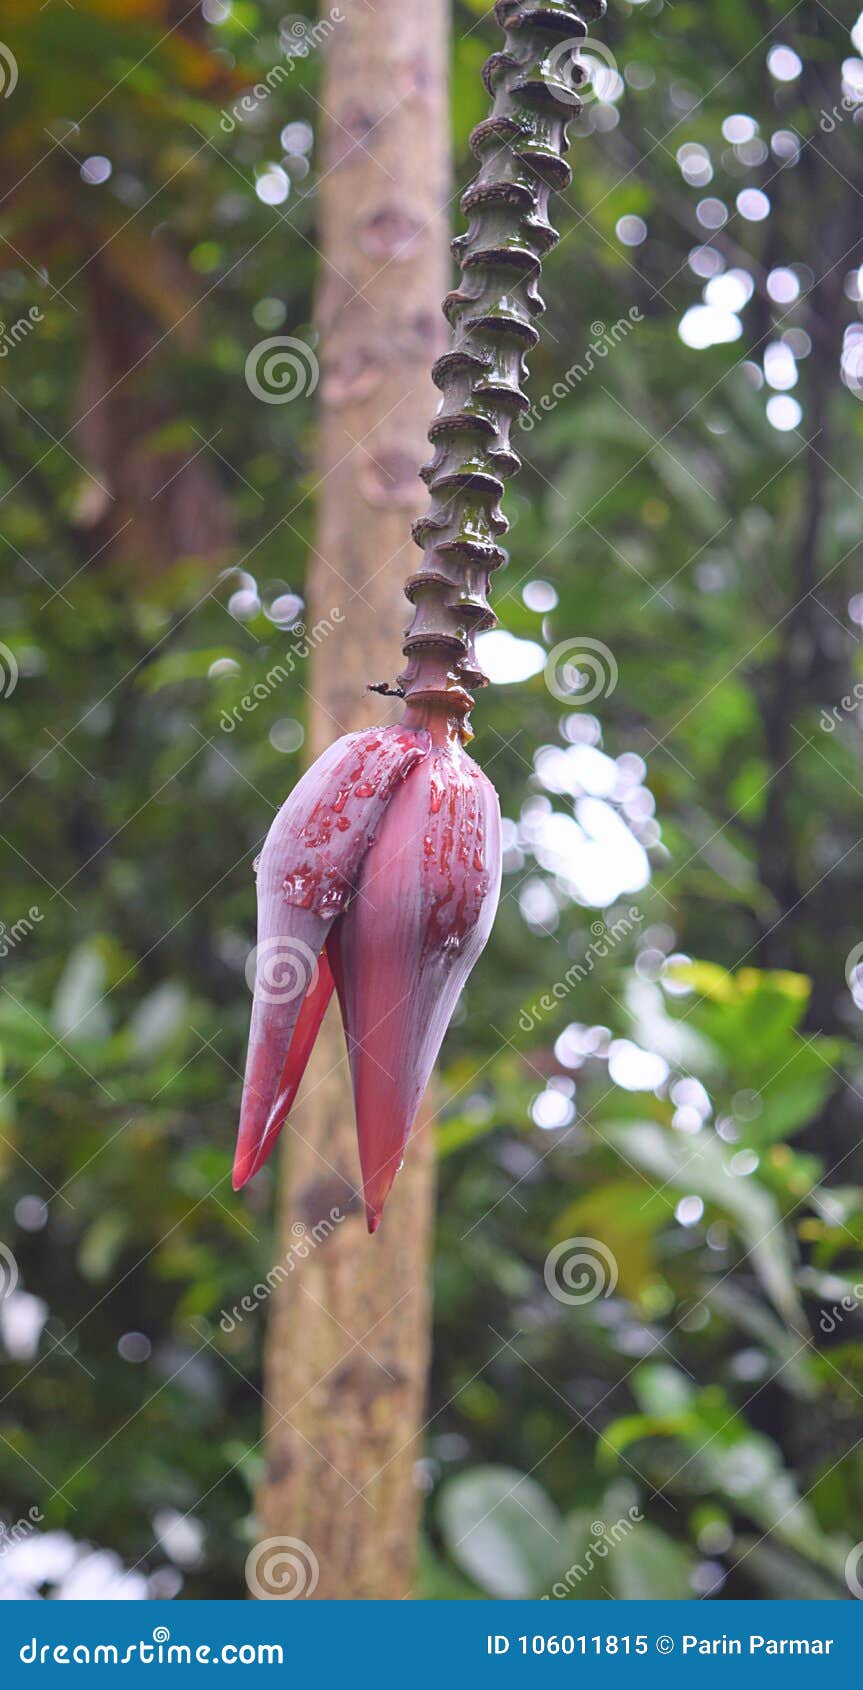 banana heart - flower of banana tree - musa acuminata